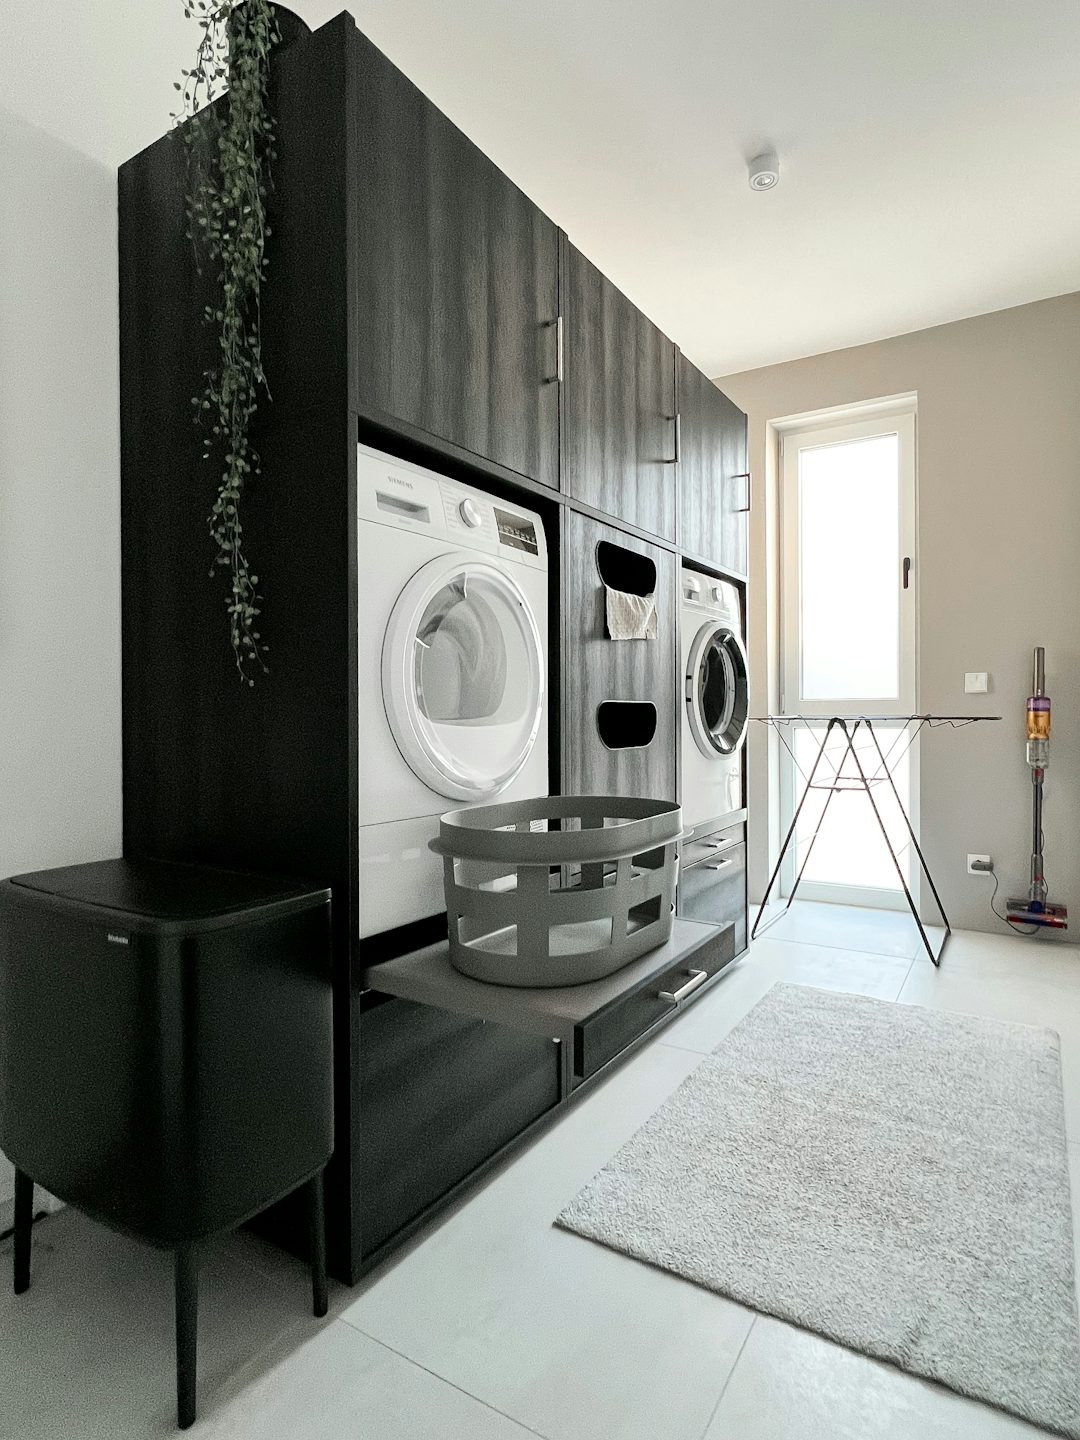 dubbele wasruimte kast zwart met wasmachine en droogkast naast elkaar met uittrekplateau voor wasmand interieur inspiratie ideeen voor wasplaats met verschillende opbergkasten voor wasproducten verhoger